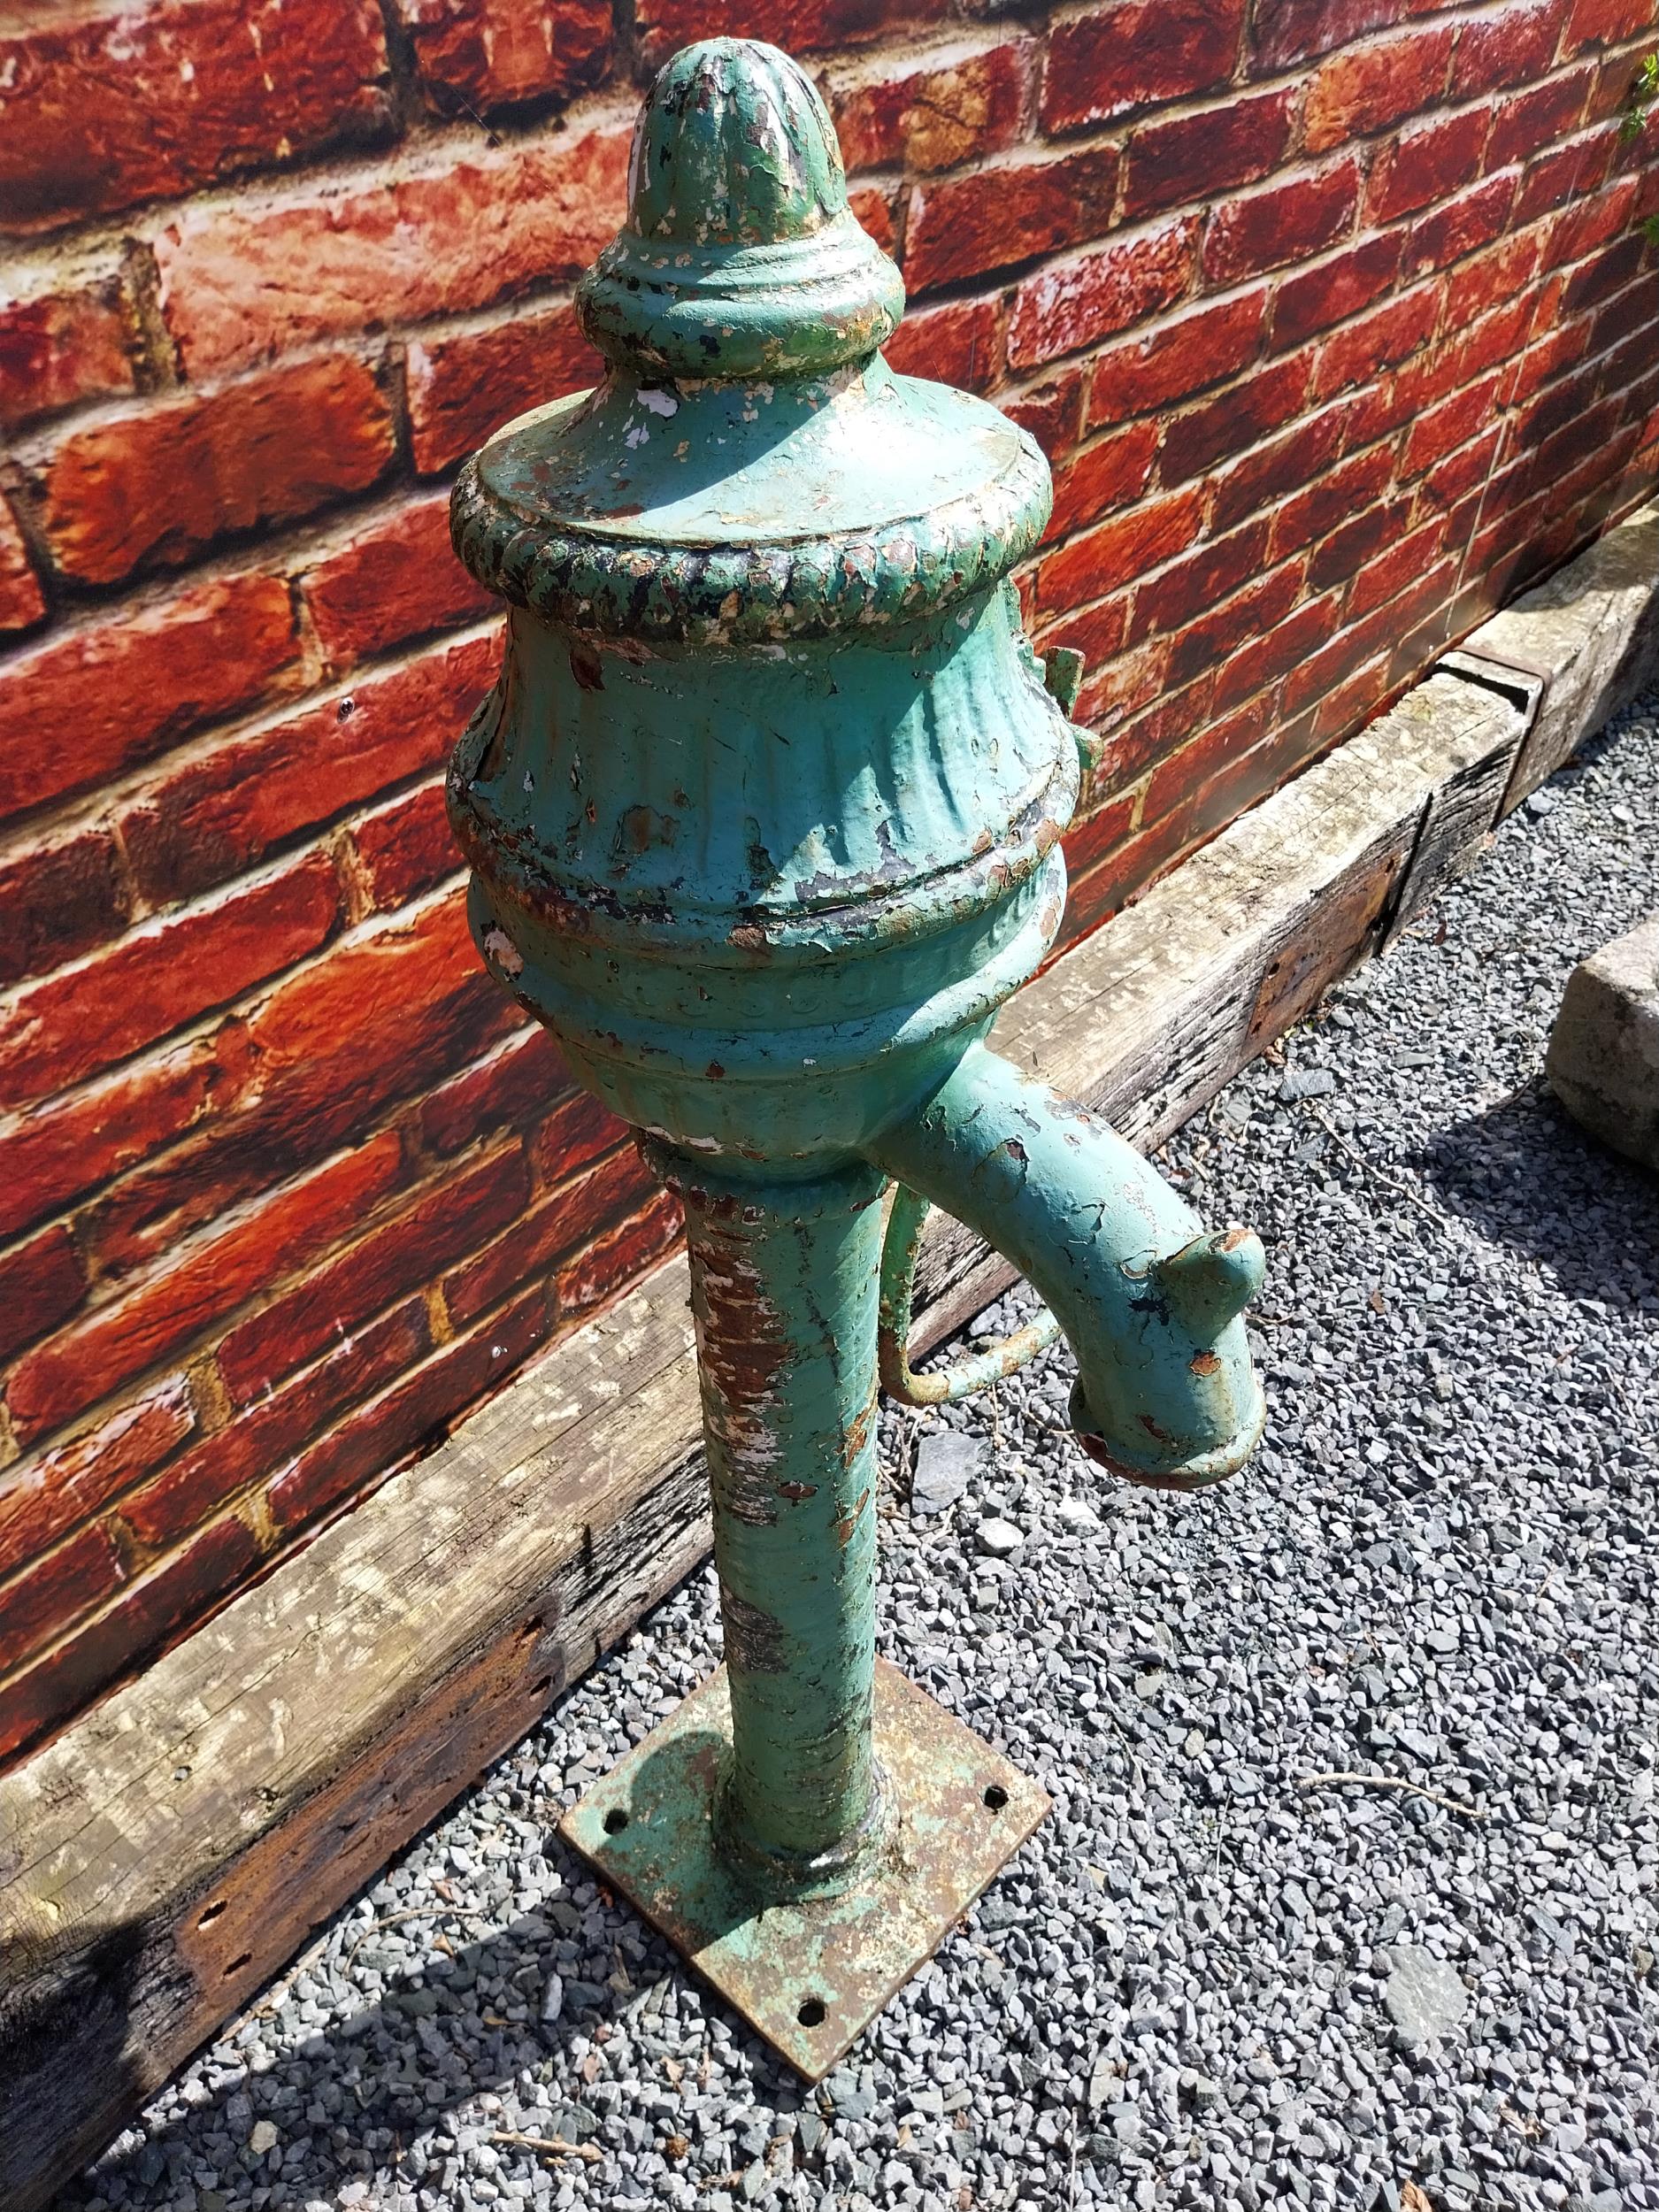 19th C. cast iron water pump - J Scotts Cookstown. {120 cm H x 60 cm W x 45 cm D}. - Image 3 of 5